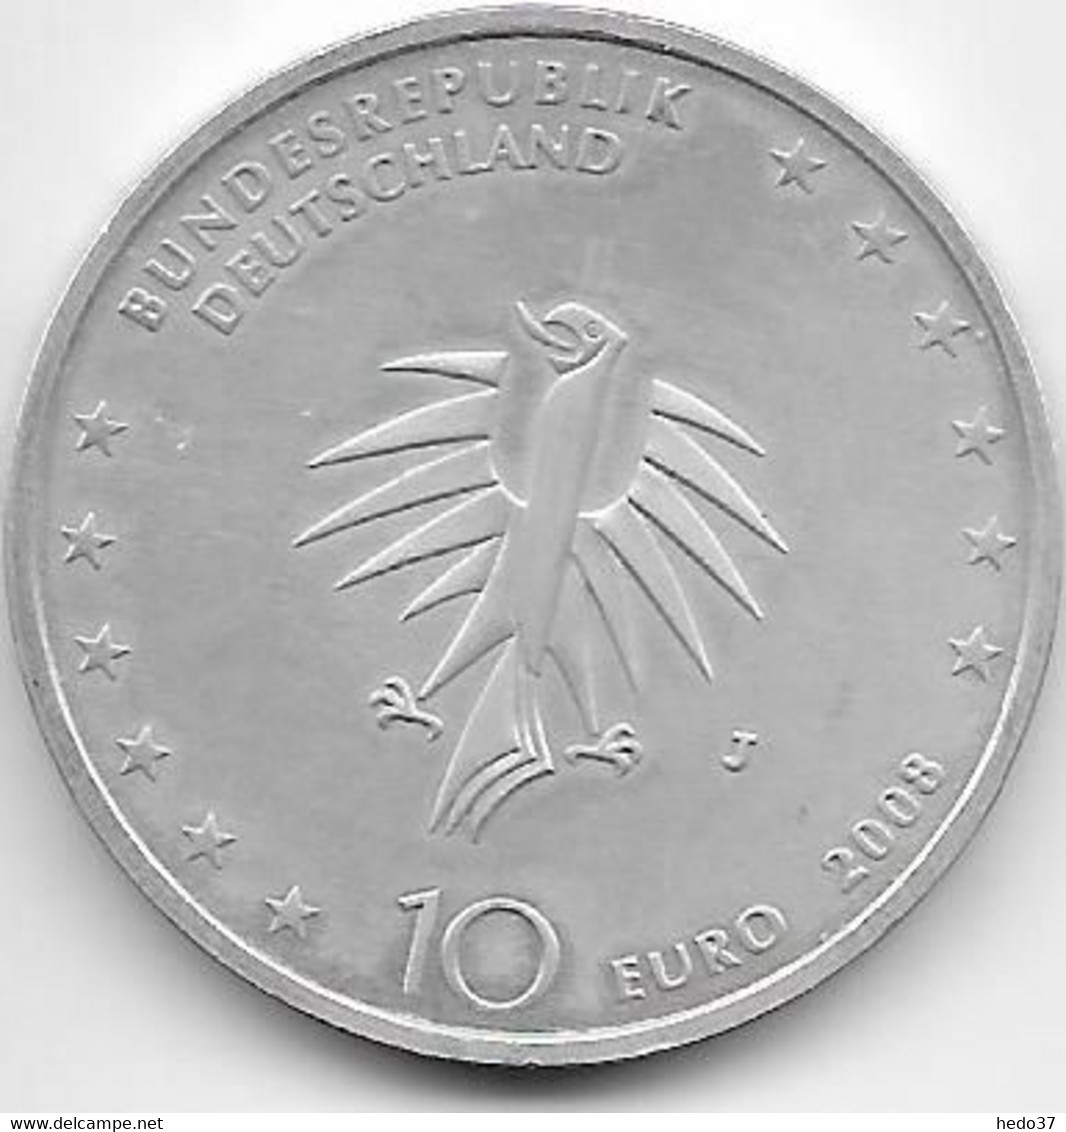 Allemagne - 10 Euro € 2008 - Argent - Conmemorativas